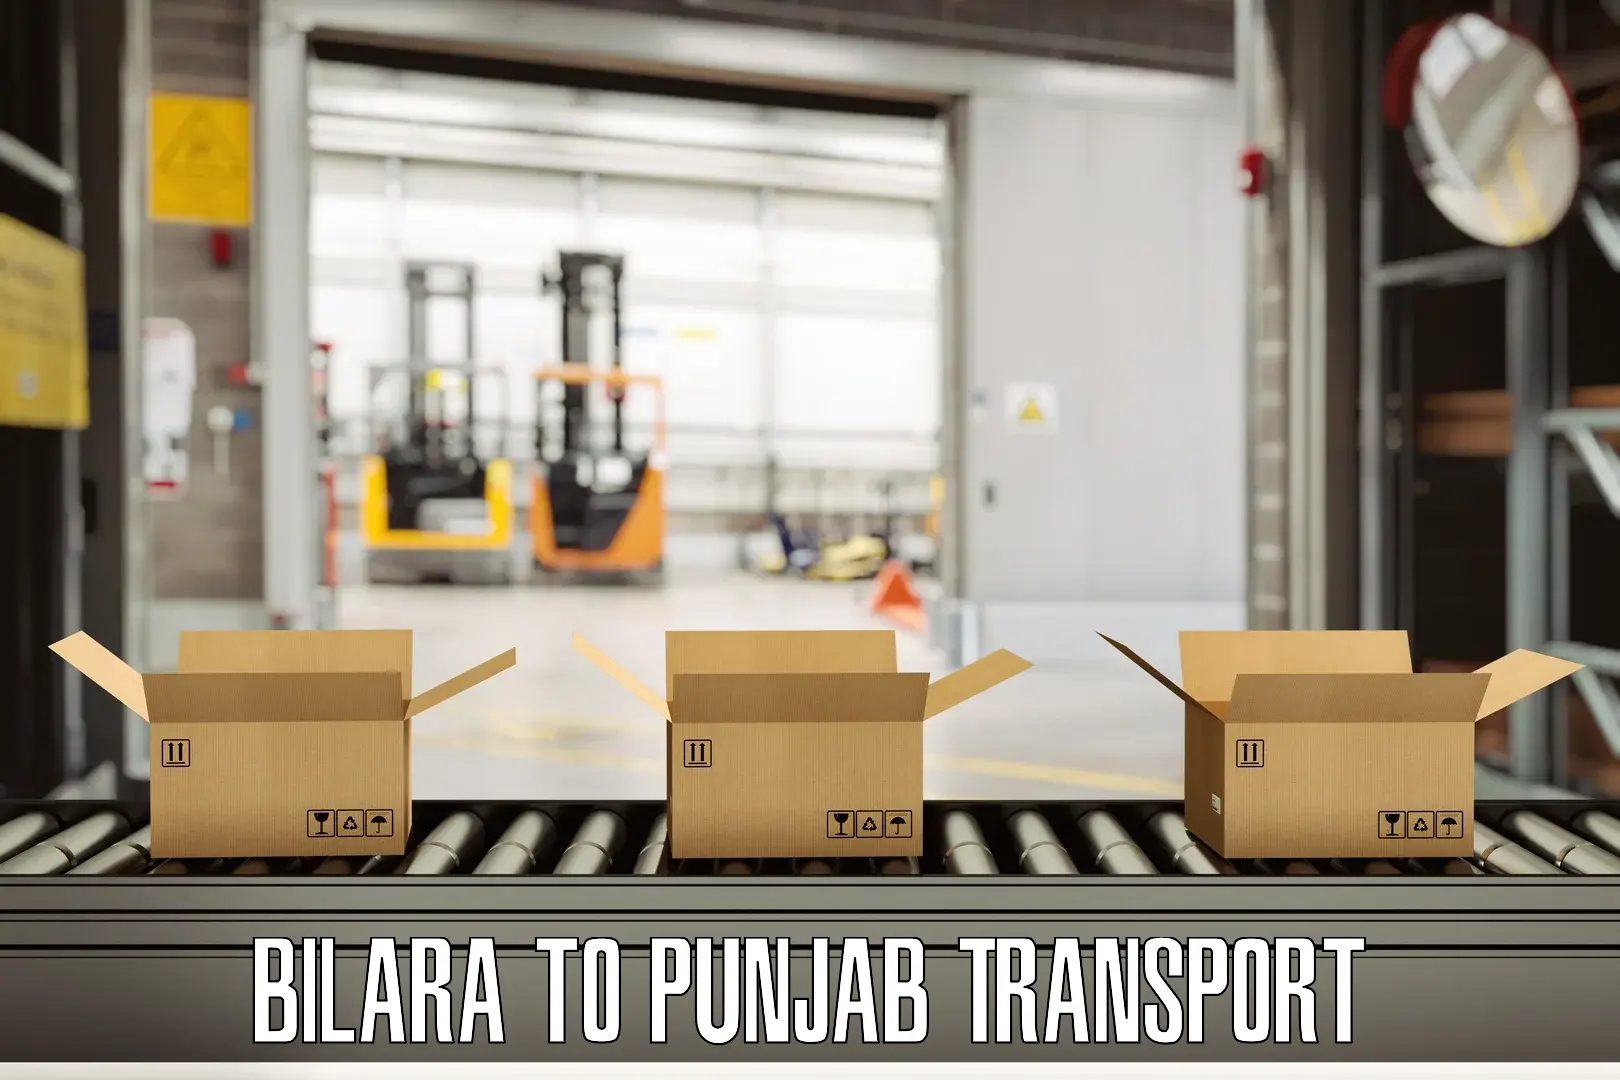 Delivery service Bilara to Jalandhar